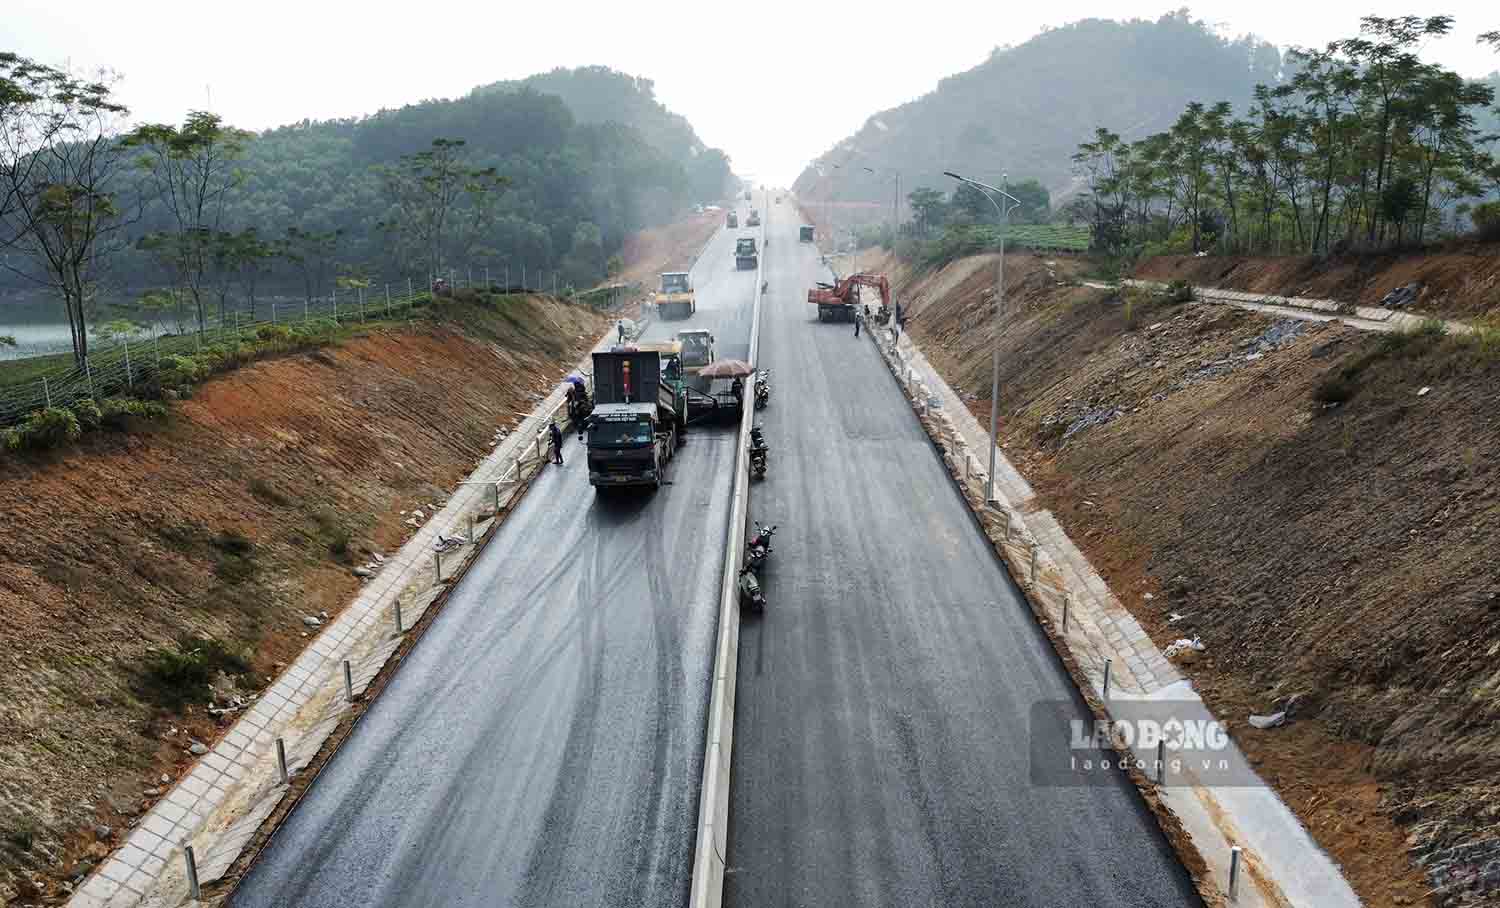 Ghi nhận trong ngày 12.12 tại dự án Cao tốc Tuyên Quang - Phú Thọ, trên toàn tuyến các nhà thầu đang gấp rút thi công hoàn thiện các hạng mục thảm mặt đường, lắp đặt lan can, hệ thống đảm bảo an toàn giao thông.